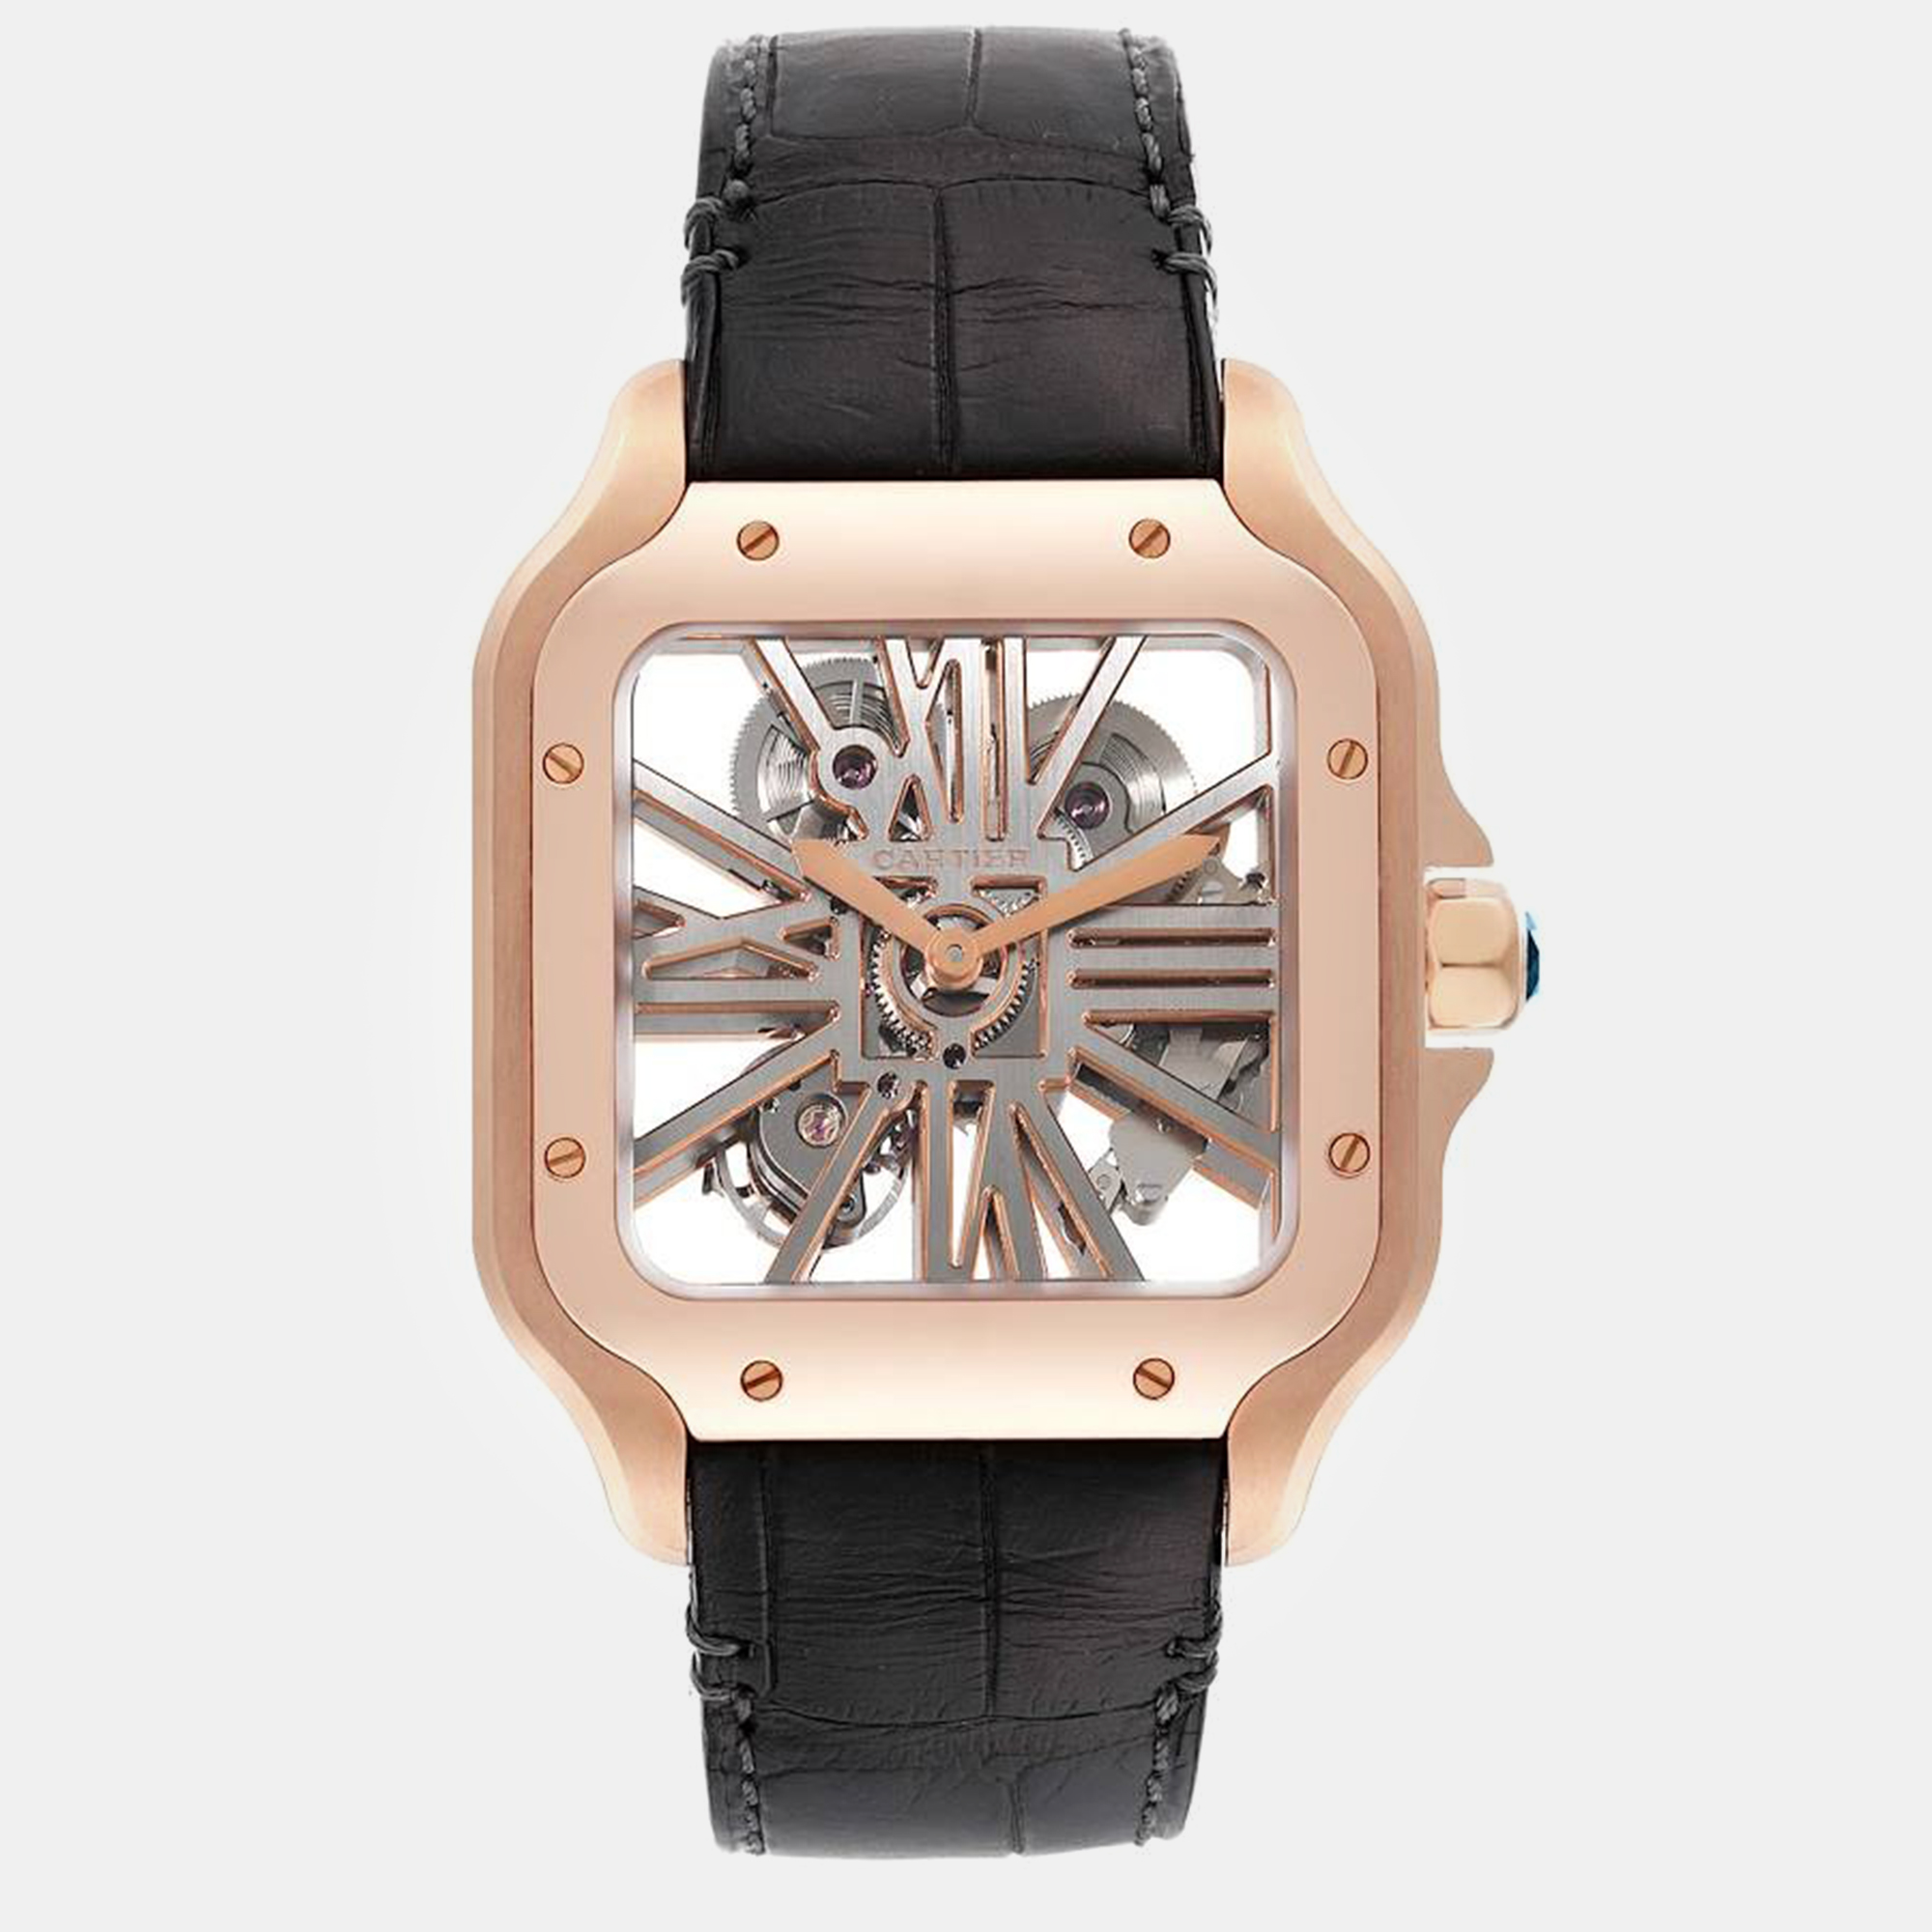 Cartier santos 18k rose gold skeleton dial men's watch 39.7 mm